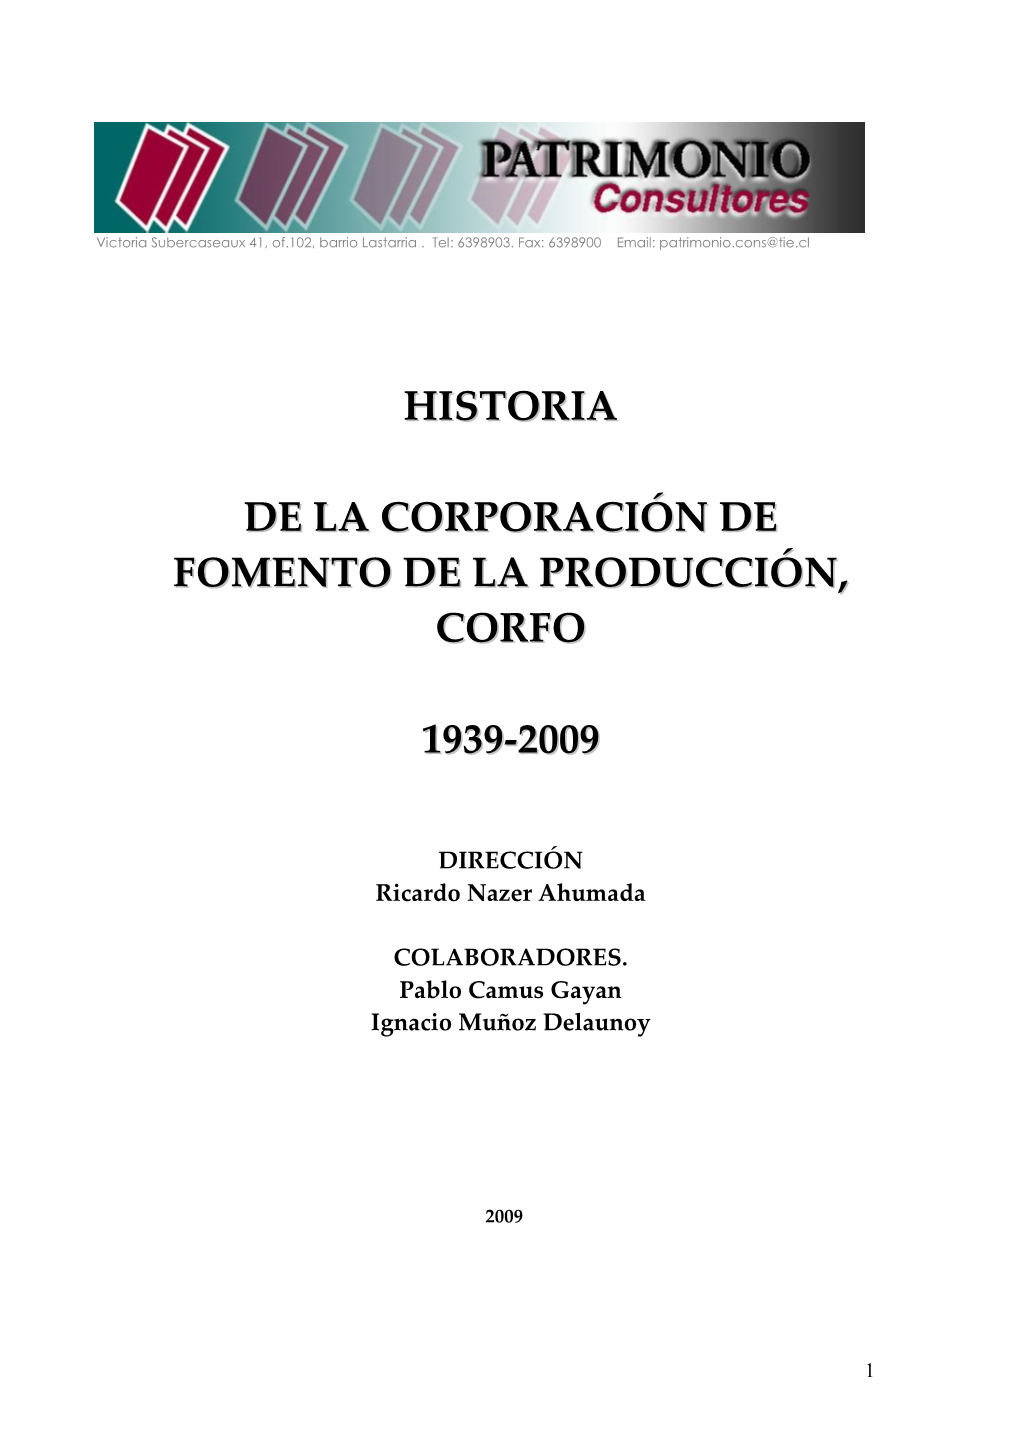 Historia De La Corporación De Fomento De La Producción, Corfo 1939-2009